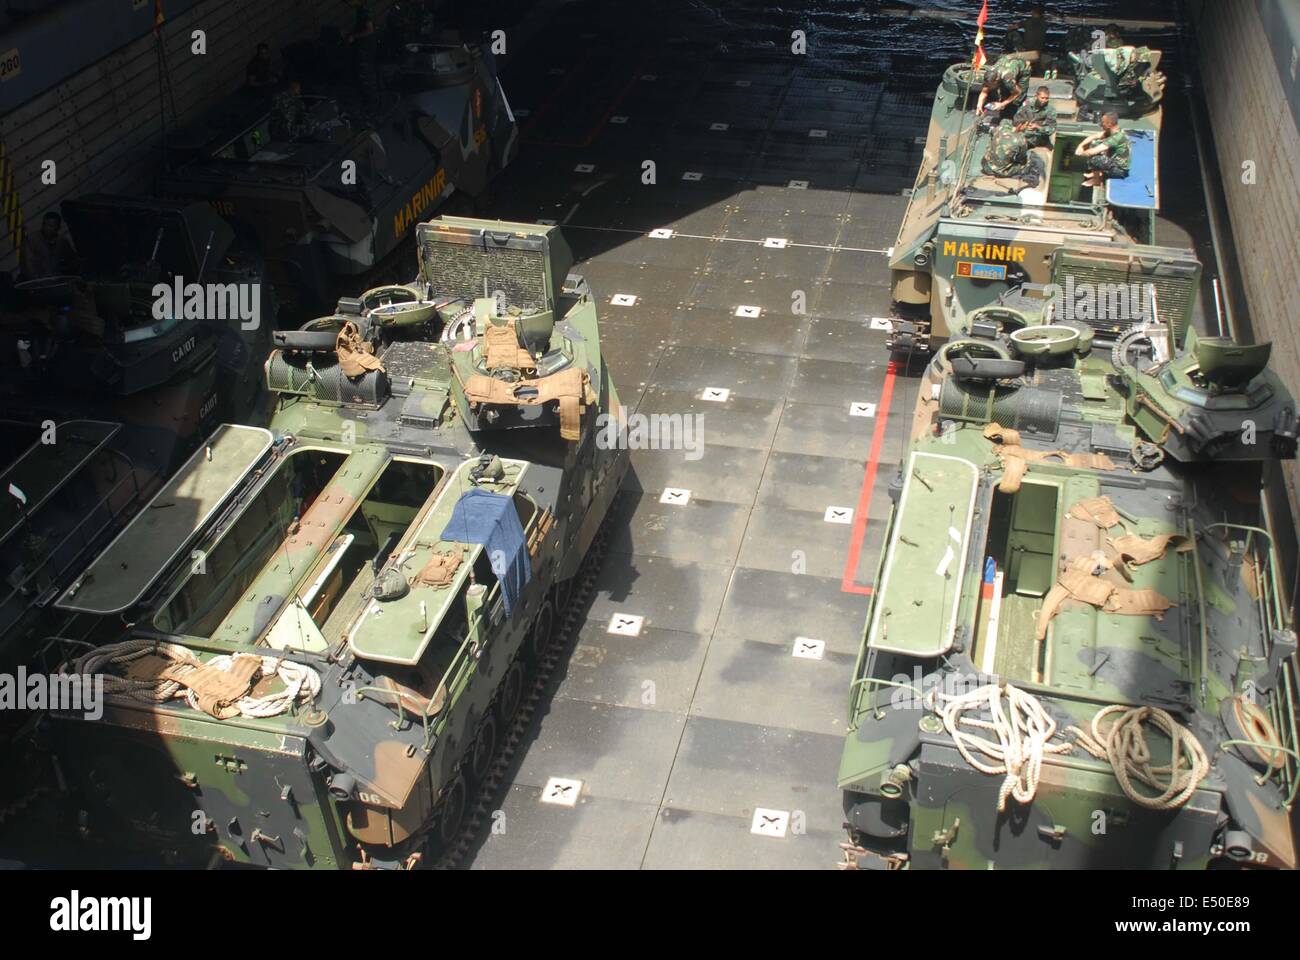 La baie de Kaneohe, Hawaii. 10 juillet, 2014. Le 18 juillet : les véhicules d'assaut amphibie (AAV) de l'US Marine Corps assister à une opération de débarquement dans le cadre du Pacific Rim l'exercice conjoint ou de l'exercice RIMPAC 2014 M-01 de wet embarquement en navire de guerre, USS Rushmore LSD-47 le 9 juillet 2014 dans la baie de Kaneohe, Oahu, Hawaii. Un total de 13 pièces de AAV et 2 véhicule d'atterrissage d'un suivi (LVT) -7 serait l'atterrissage dans une série d'exercices de mécanique dans les débarquements dans MCTAB invasion (Zone d'entraînement du Corps des Marines des soufflets) © Sijori Images/ZUMA/Alamy Fil Live News Banque D'Images